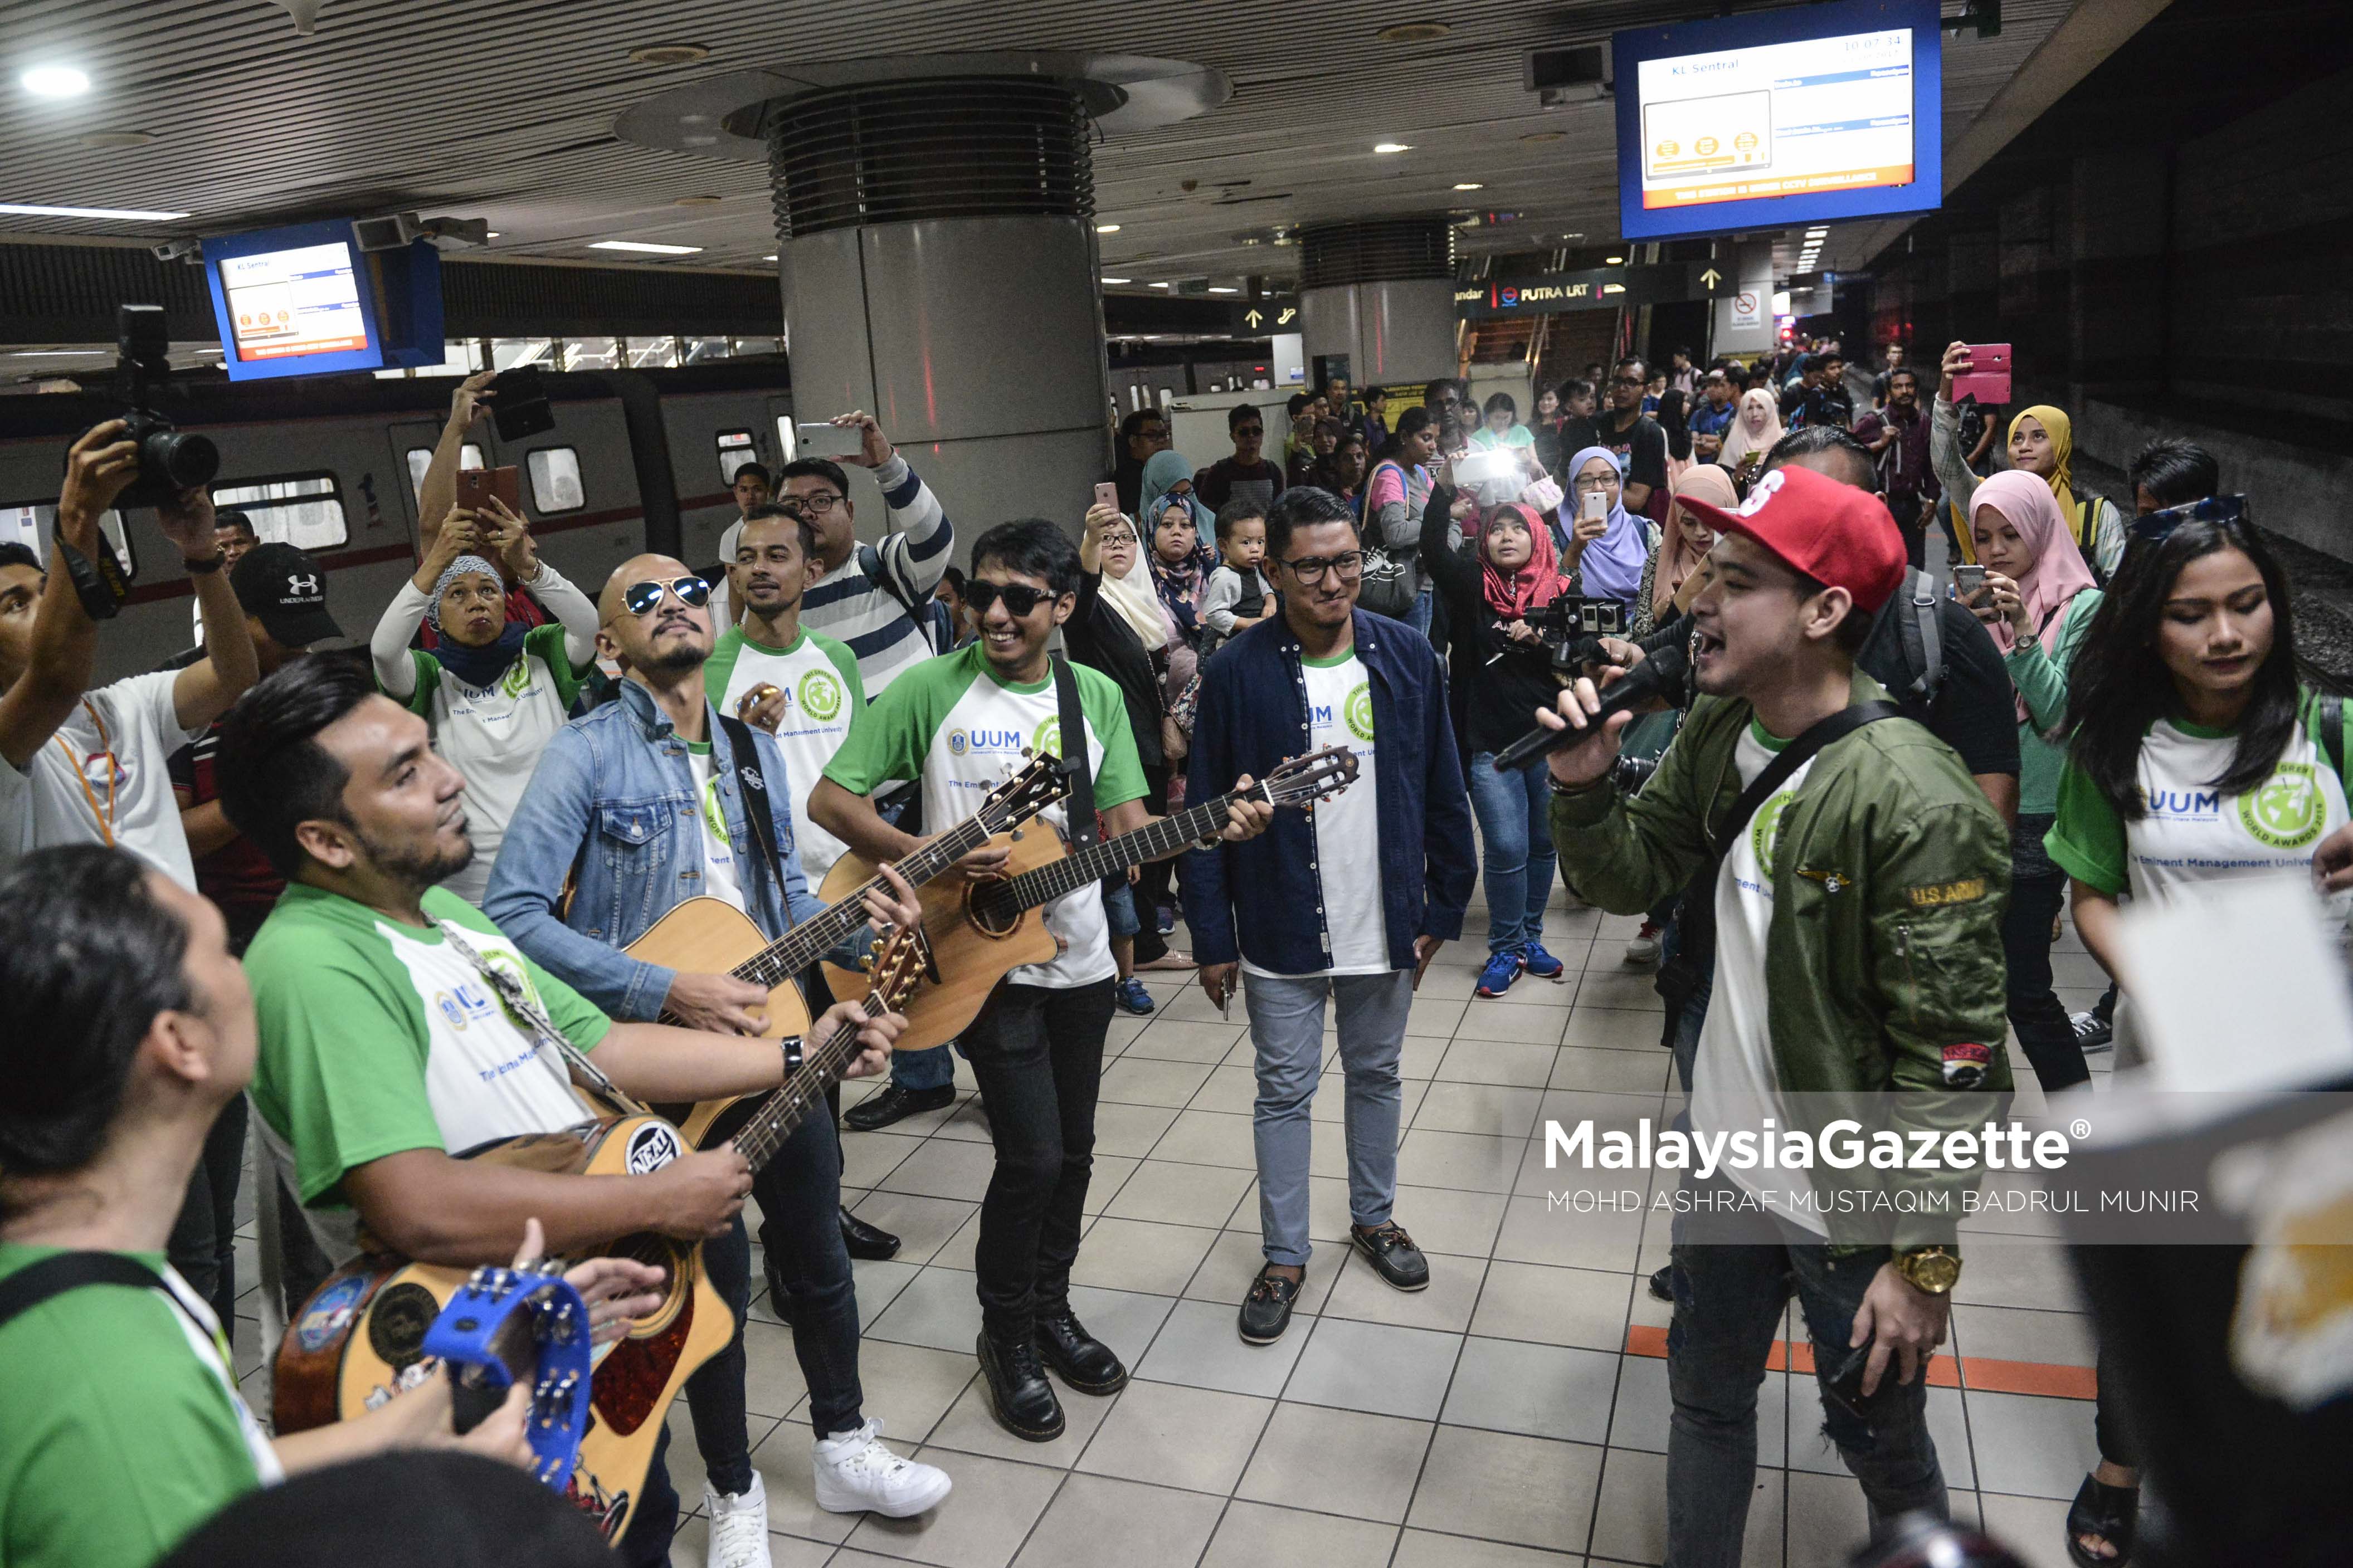 Penyanyi Tomok, bersama beberapa rakan artis lain seperti Zahid AF dan Aril AF menyanyikan lagu bagi menghiburkan orang ramai sambil mendapatkan derma untuk membantu anak yatim pada program Busking AId On Train di KL Sentral, Kuala Lumpur. foto ASHRAF MUSTAQIM BADRUL MUNIR, 21 JANUARI 2017.